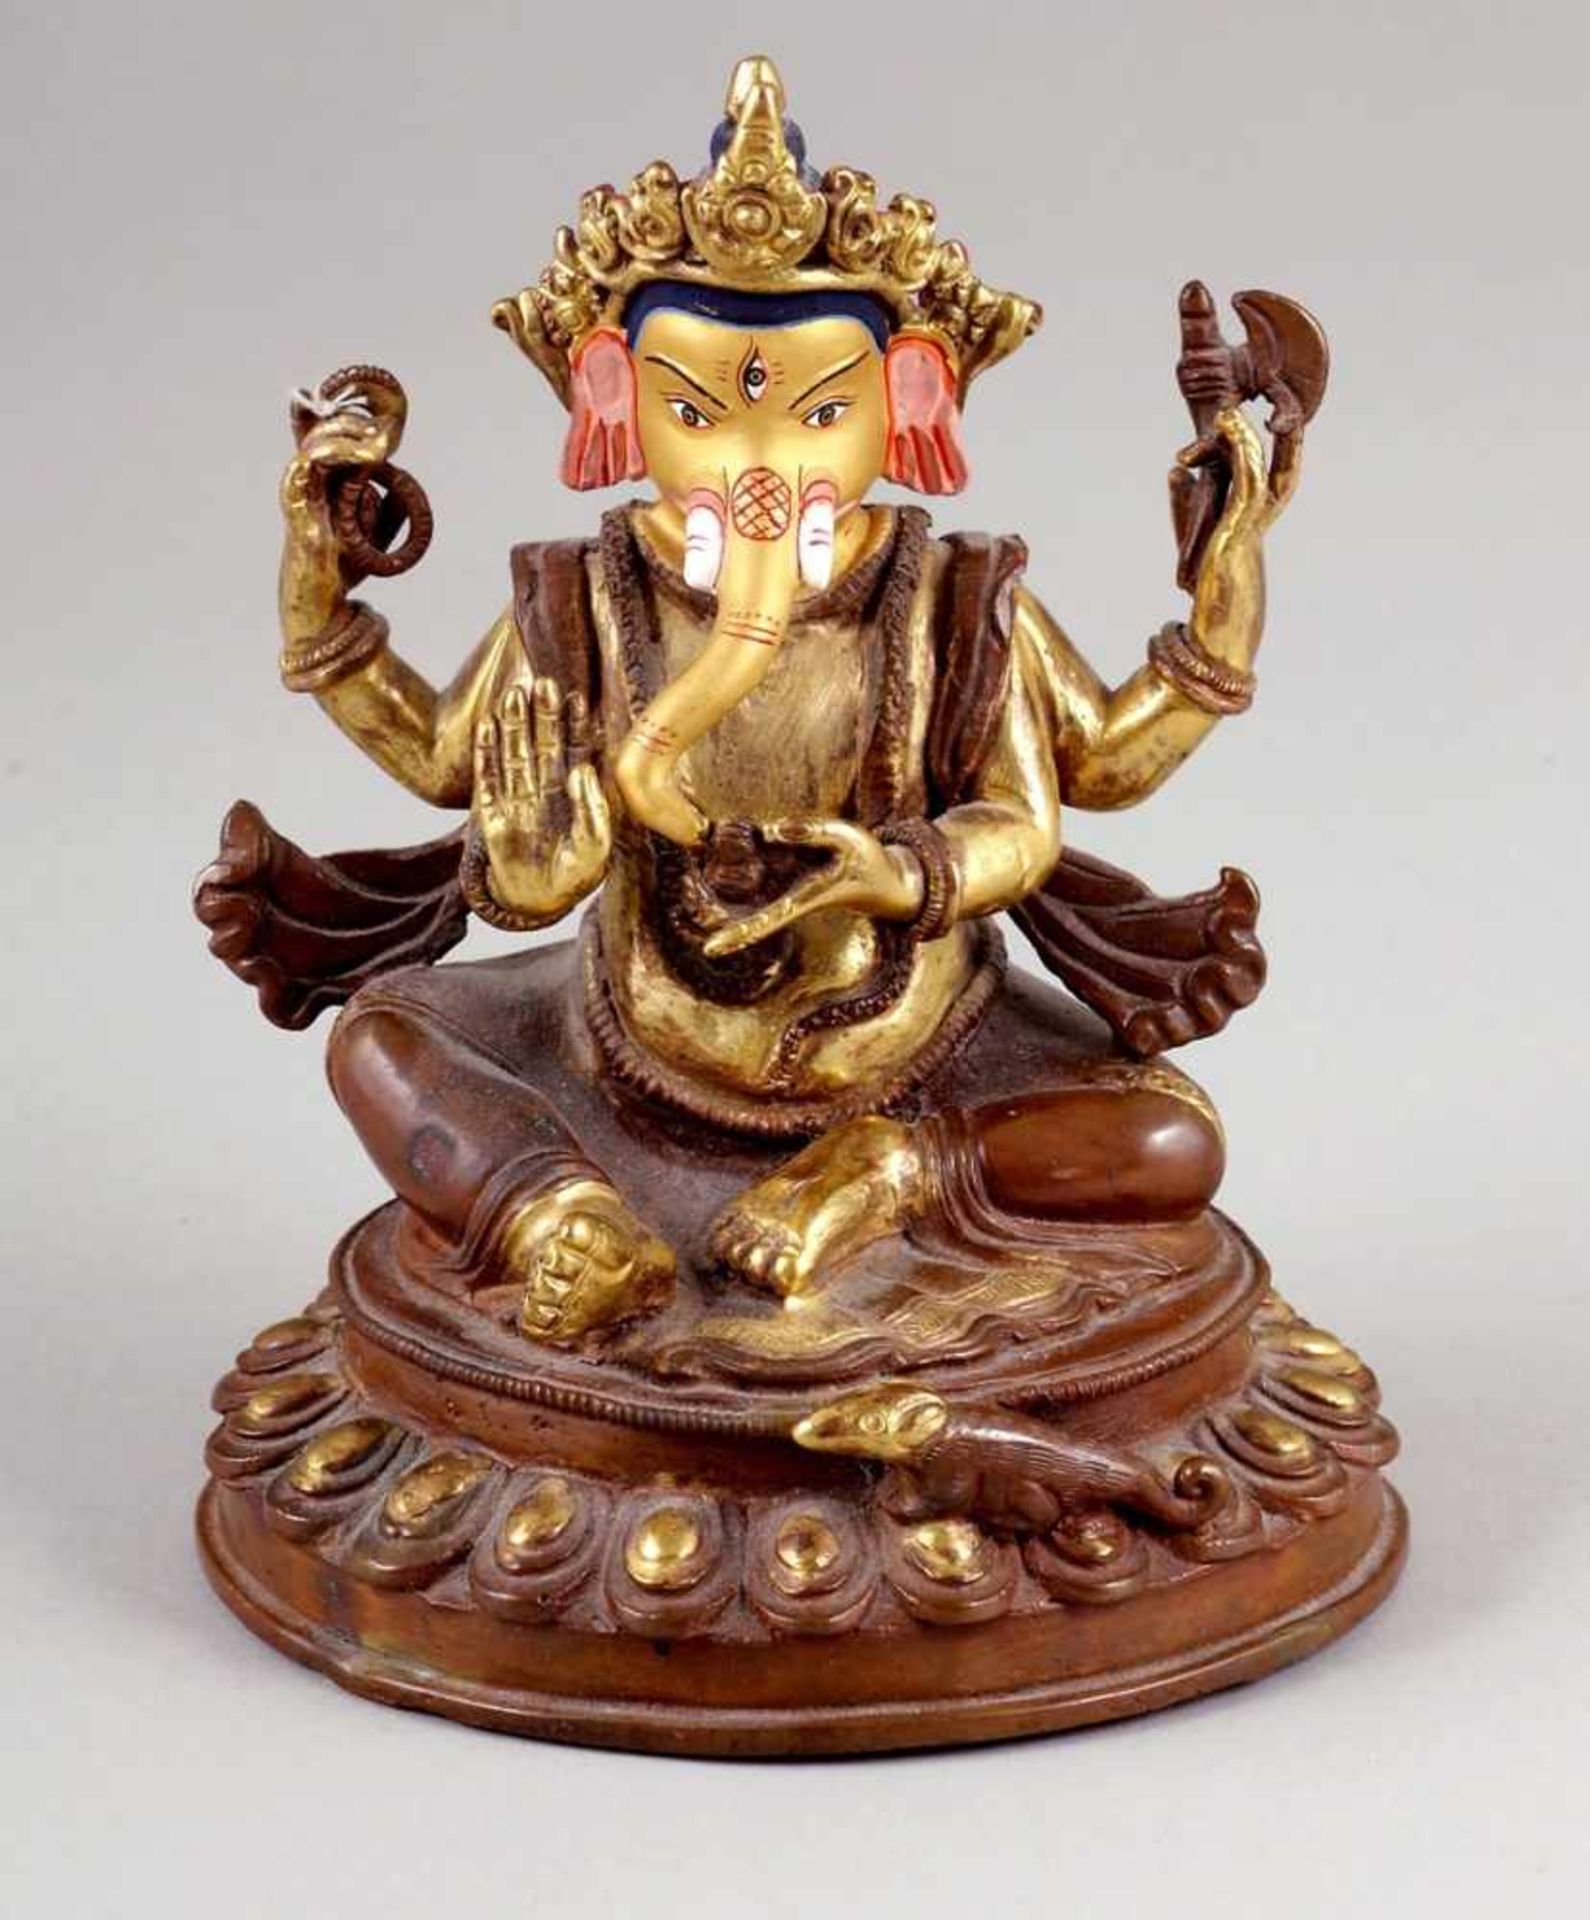 Ganesha FigurIndien. Bronze. Vergoldet und bemalt. H.15 cm. In seinen Händen hält er auf der einen